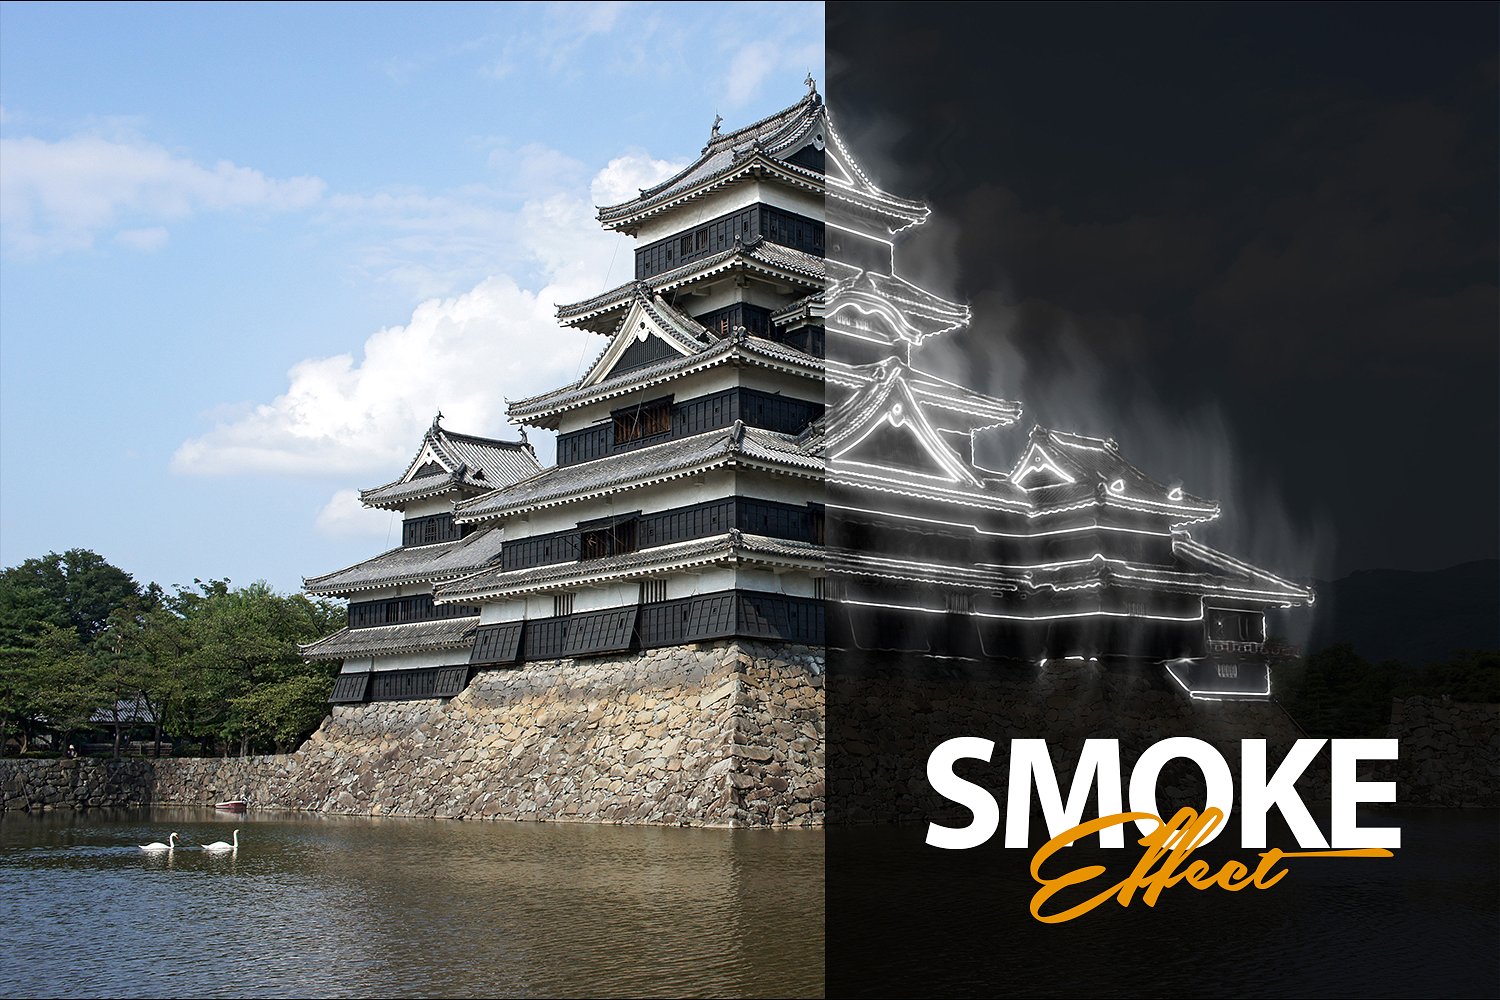 神秘的烟雾效应PS动作下载 Smoke Effect Photoshop Action [atn]插图(4)